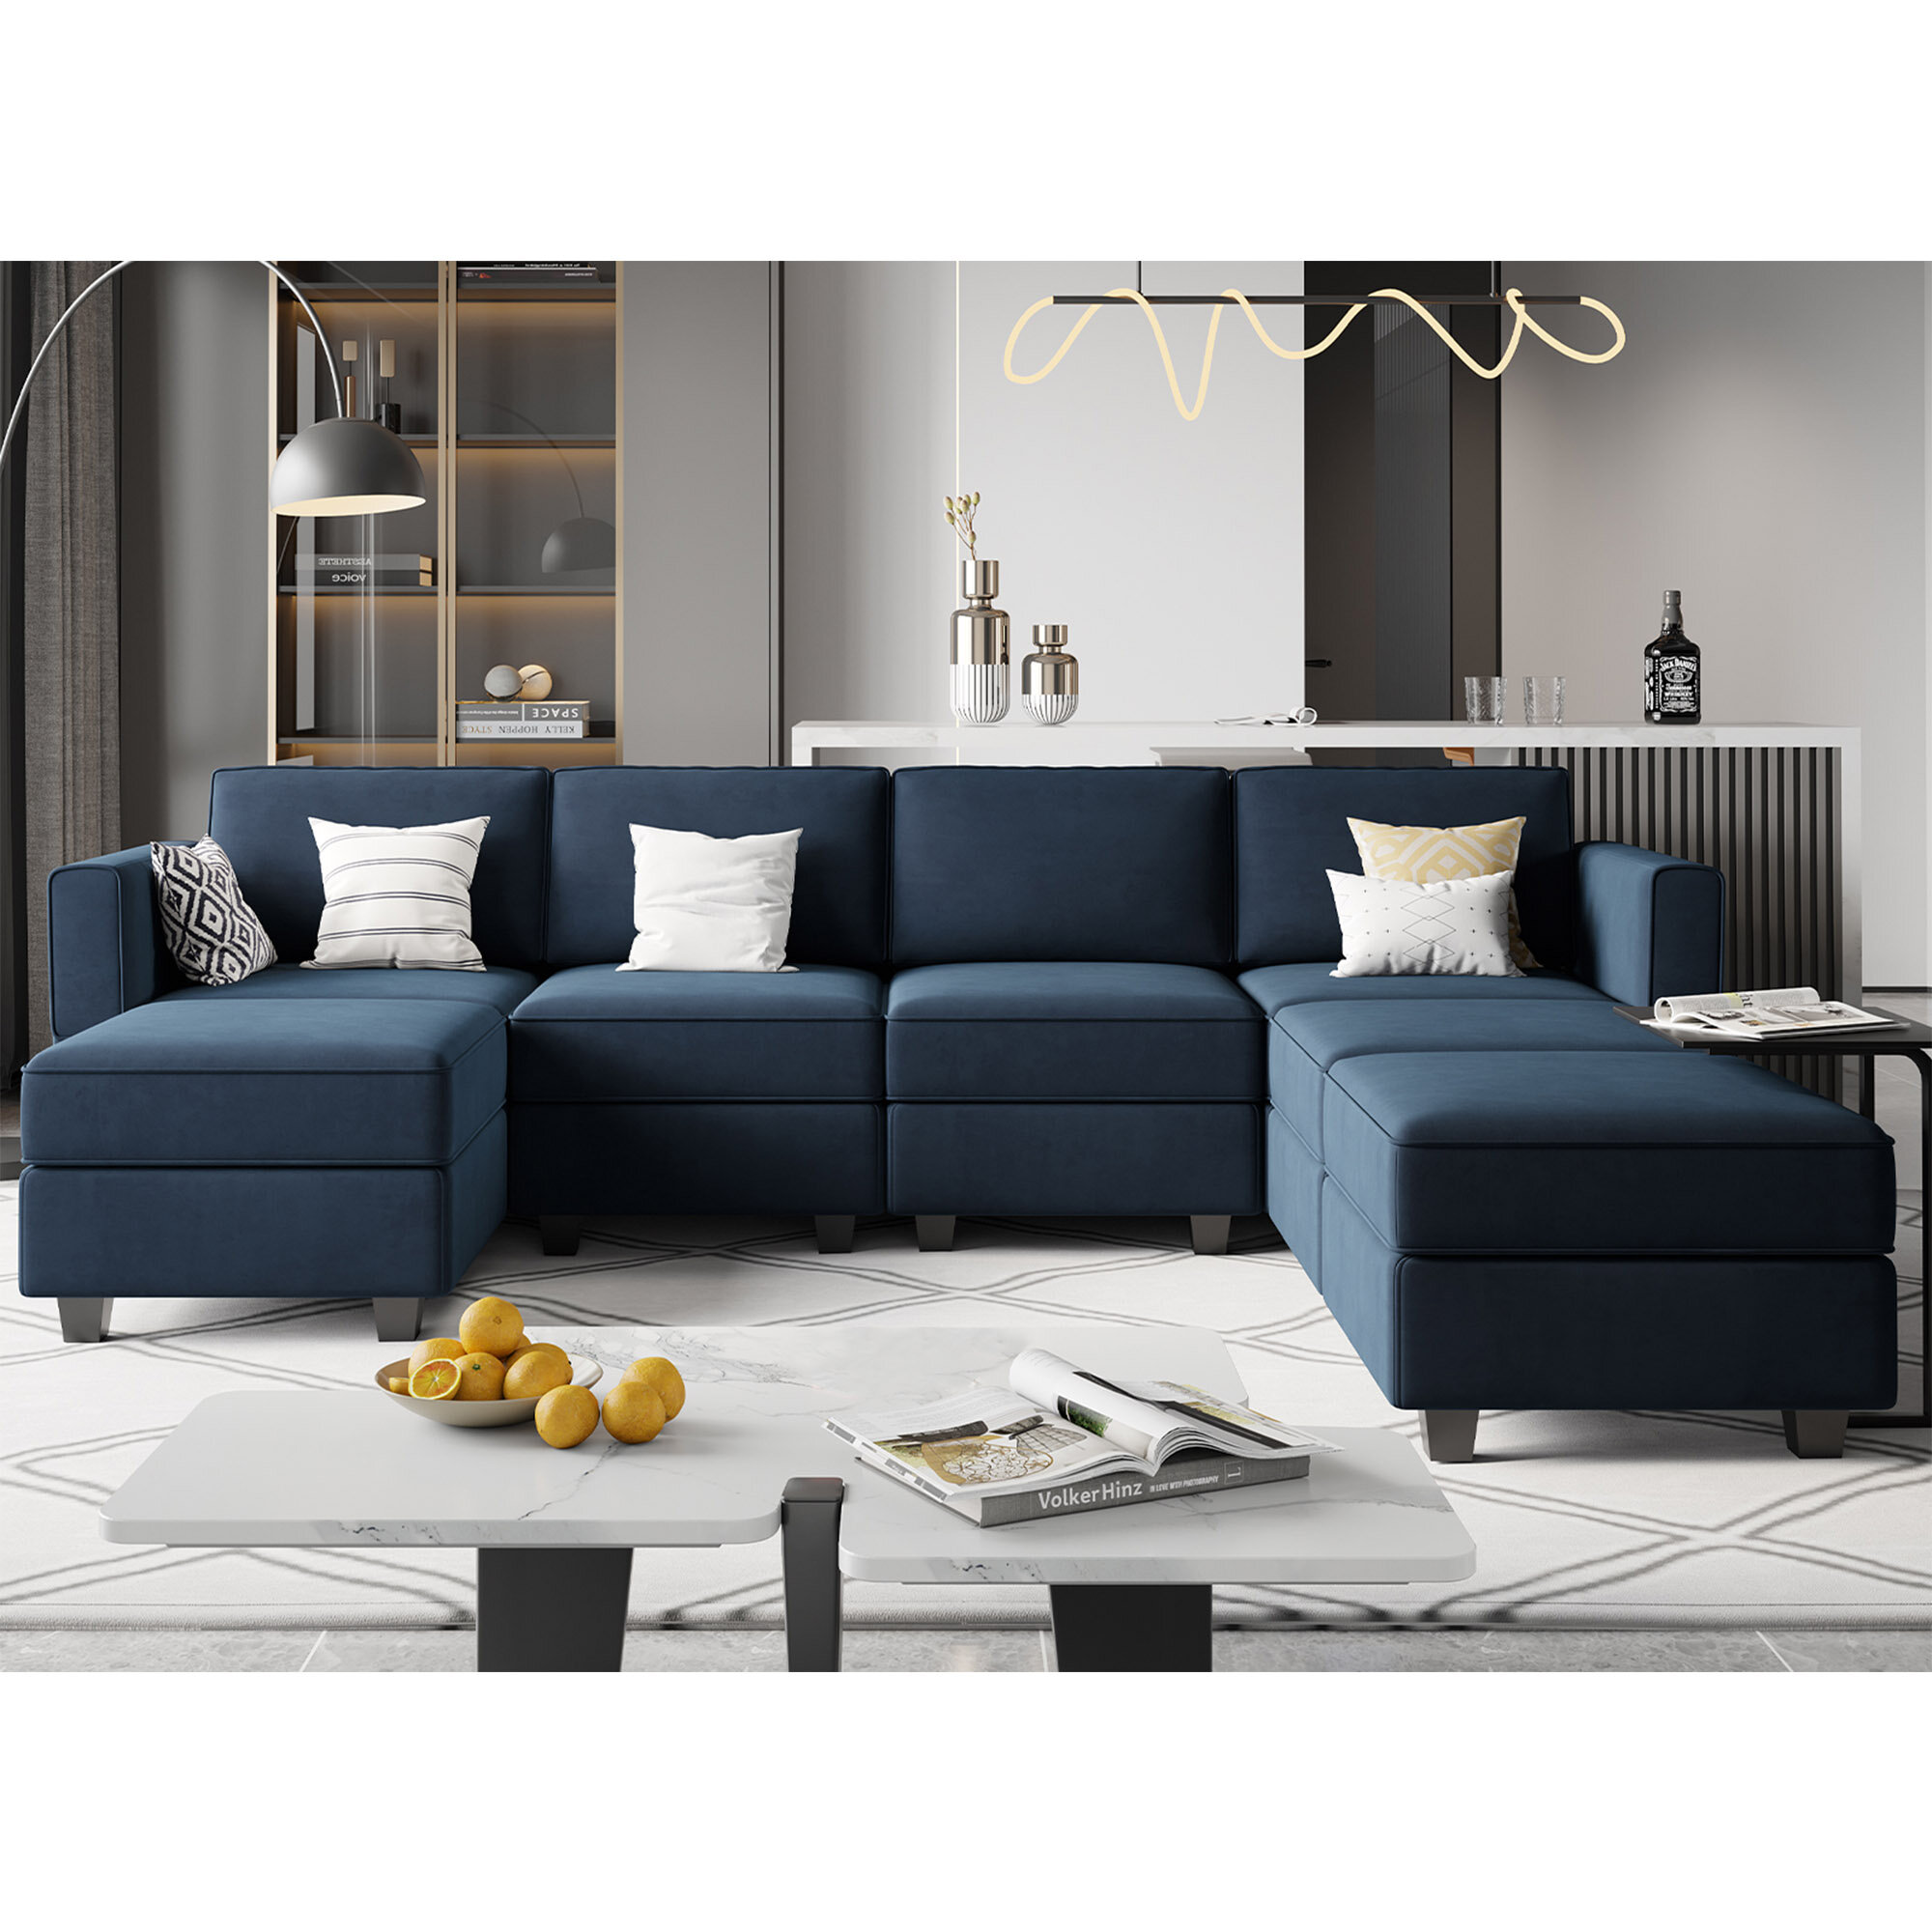 https://assets.wfcdn.com/im/30421173/compr-r85/1923/192312687/chanaye-1166-velvet-modular-upholstered-sofa.jpg